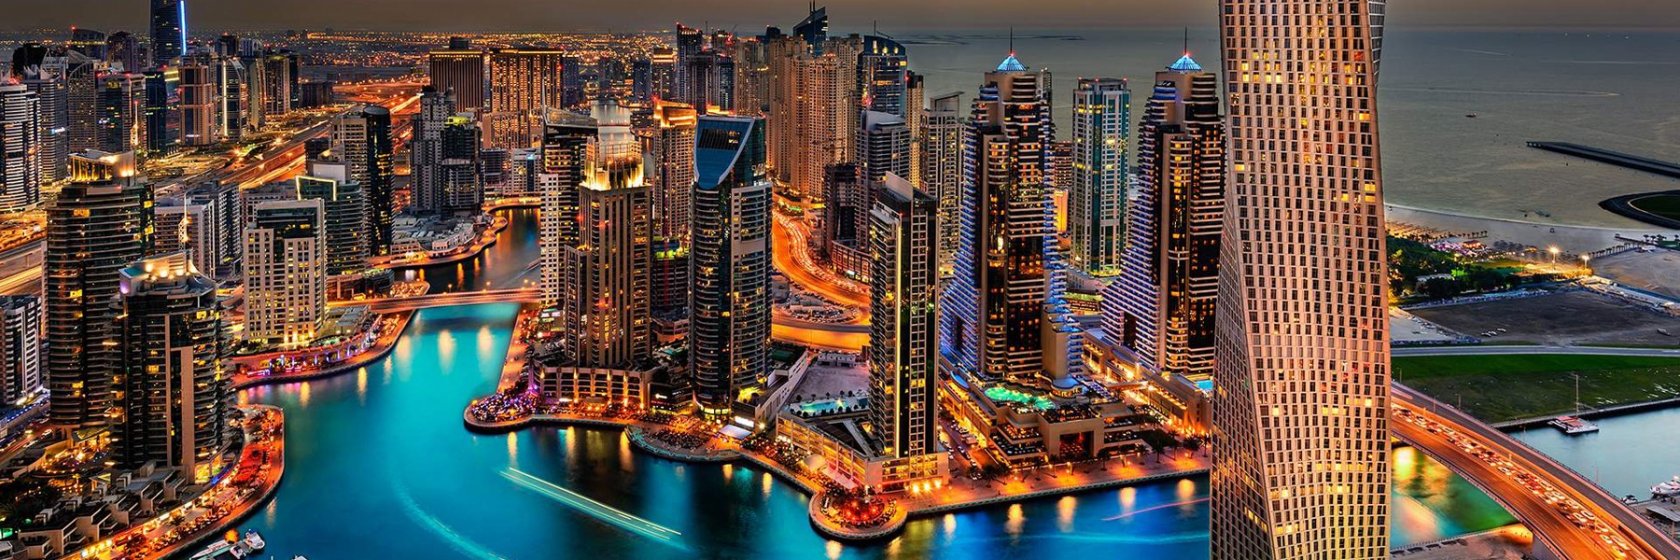 City Sight-Seeing Tour Dubai